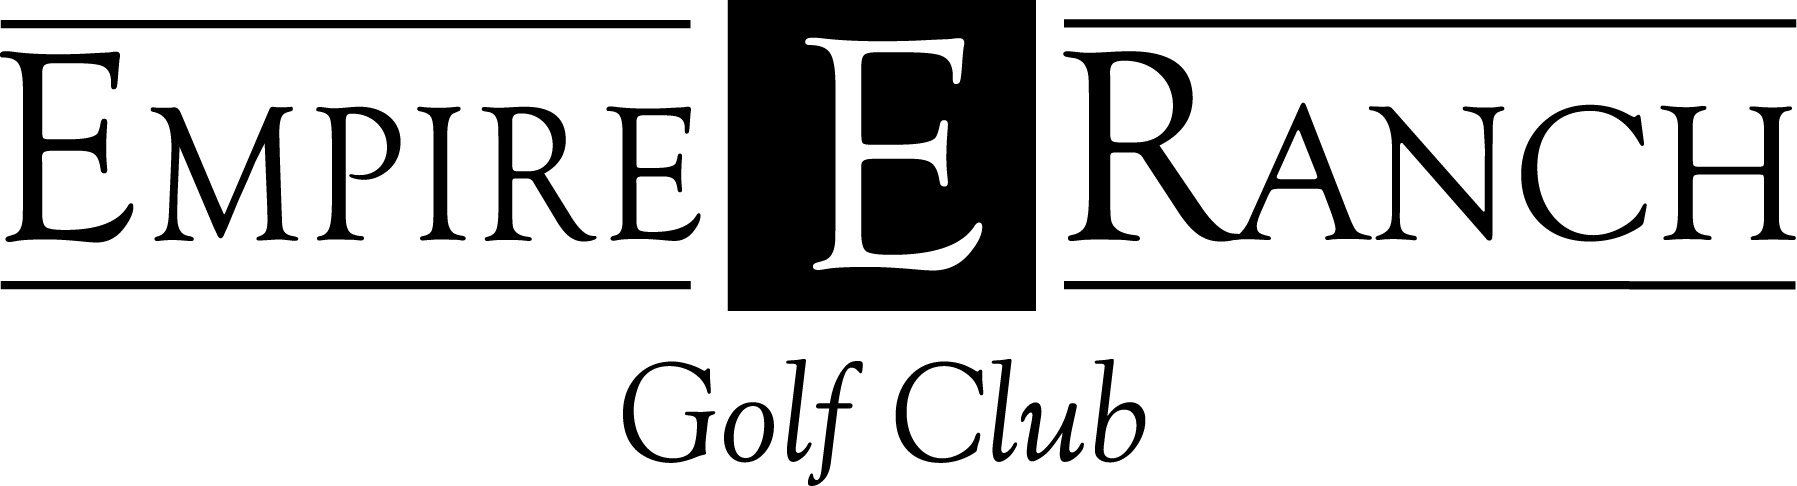 Empire Ranch Golf Club